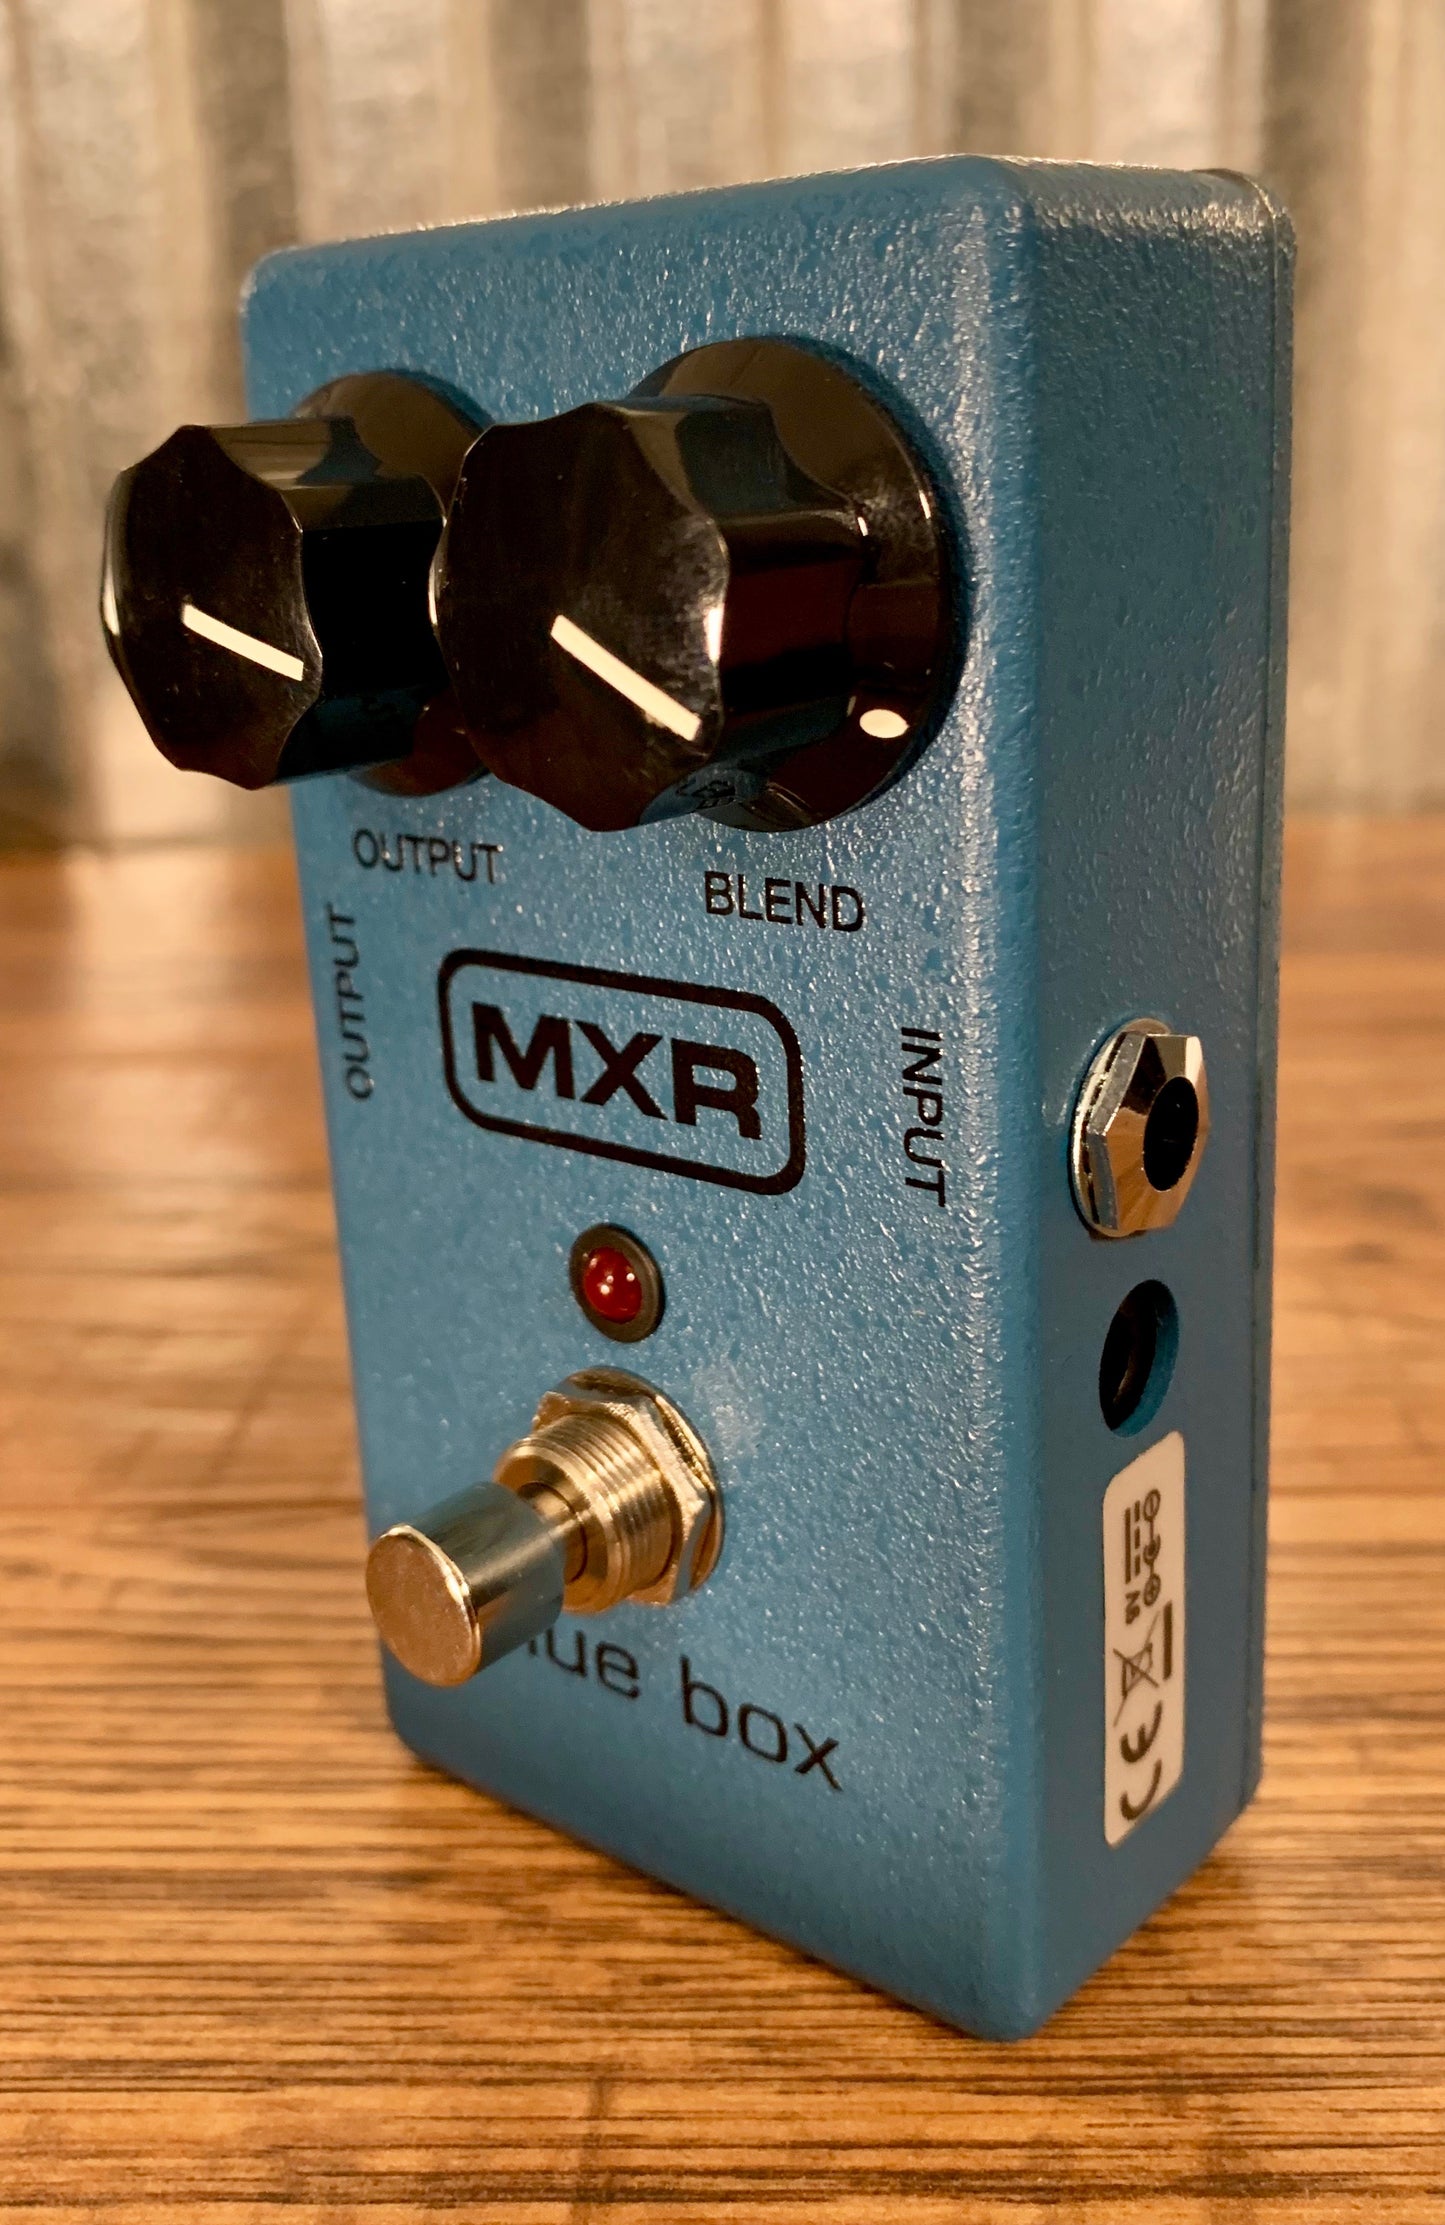 Dunlop MXR M103 Blue Box Octave Fuzz Guitar Effect Pedal B Stock